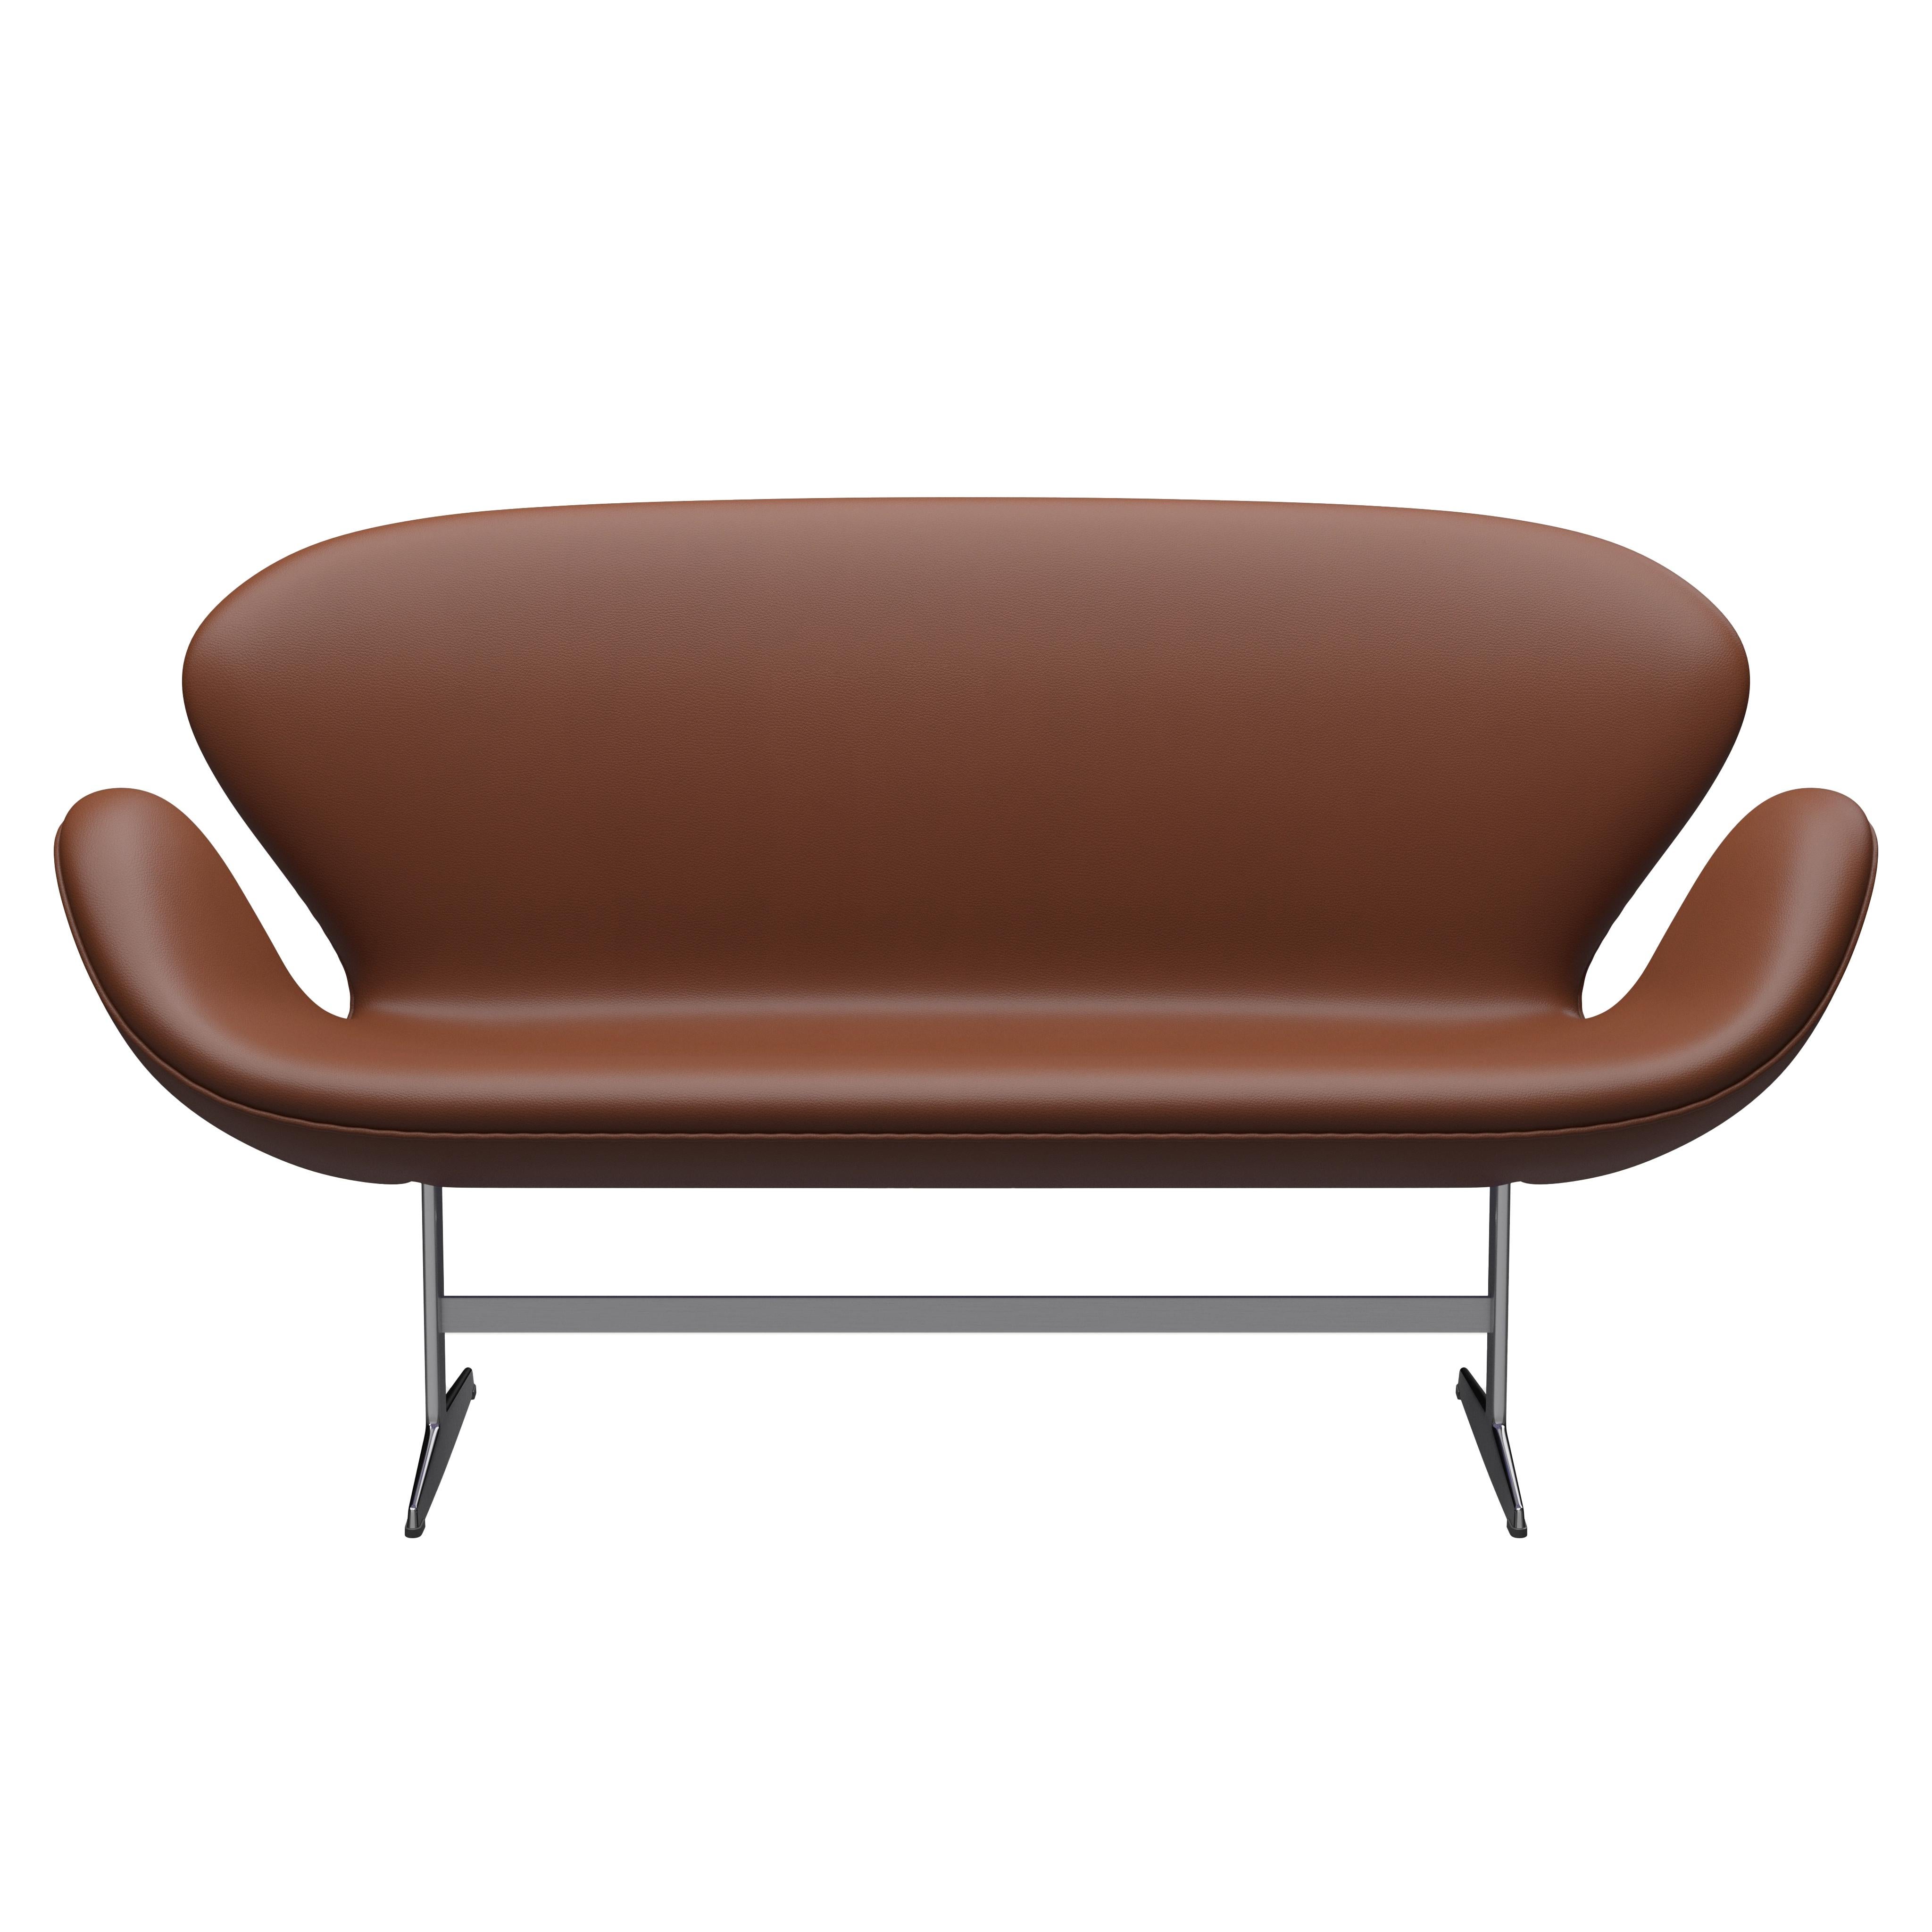 Arne Jacobsen 'Swan' Sofa for Fritz Hansen in Leather Upholstery (Cat. 4) For Sale 5